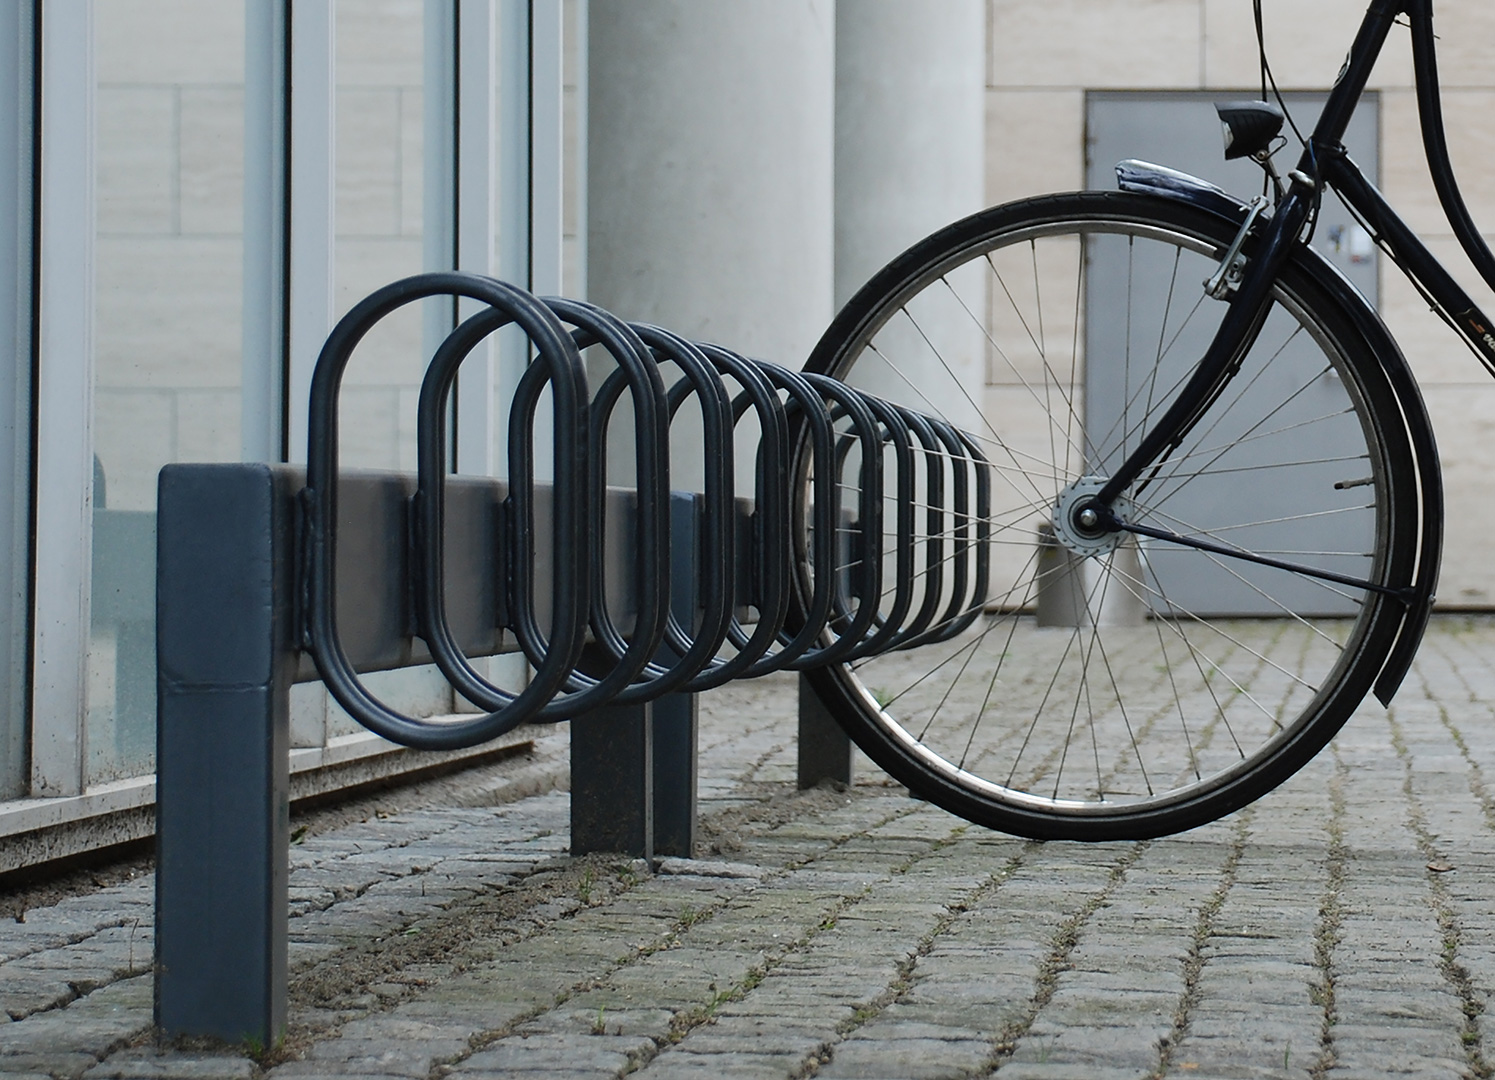 Svarta cykelställ med ovala bågar